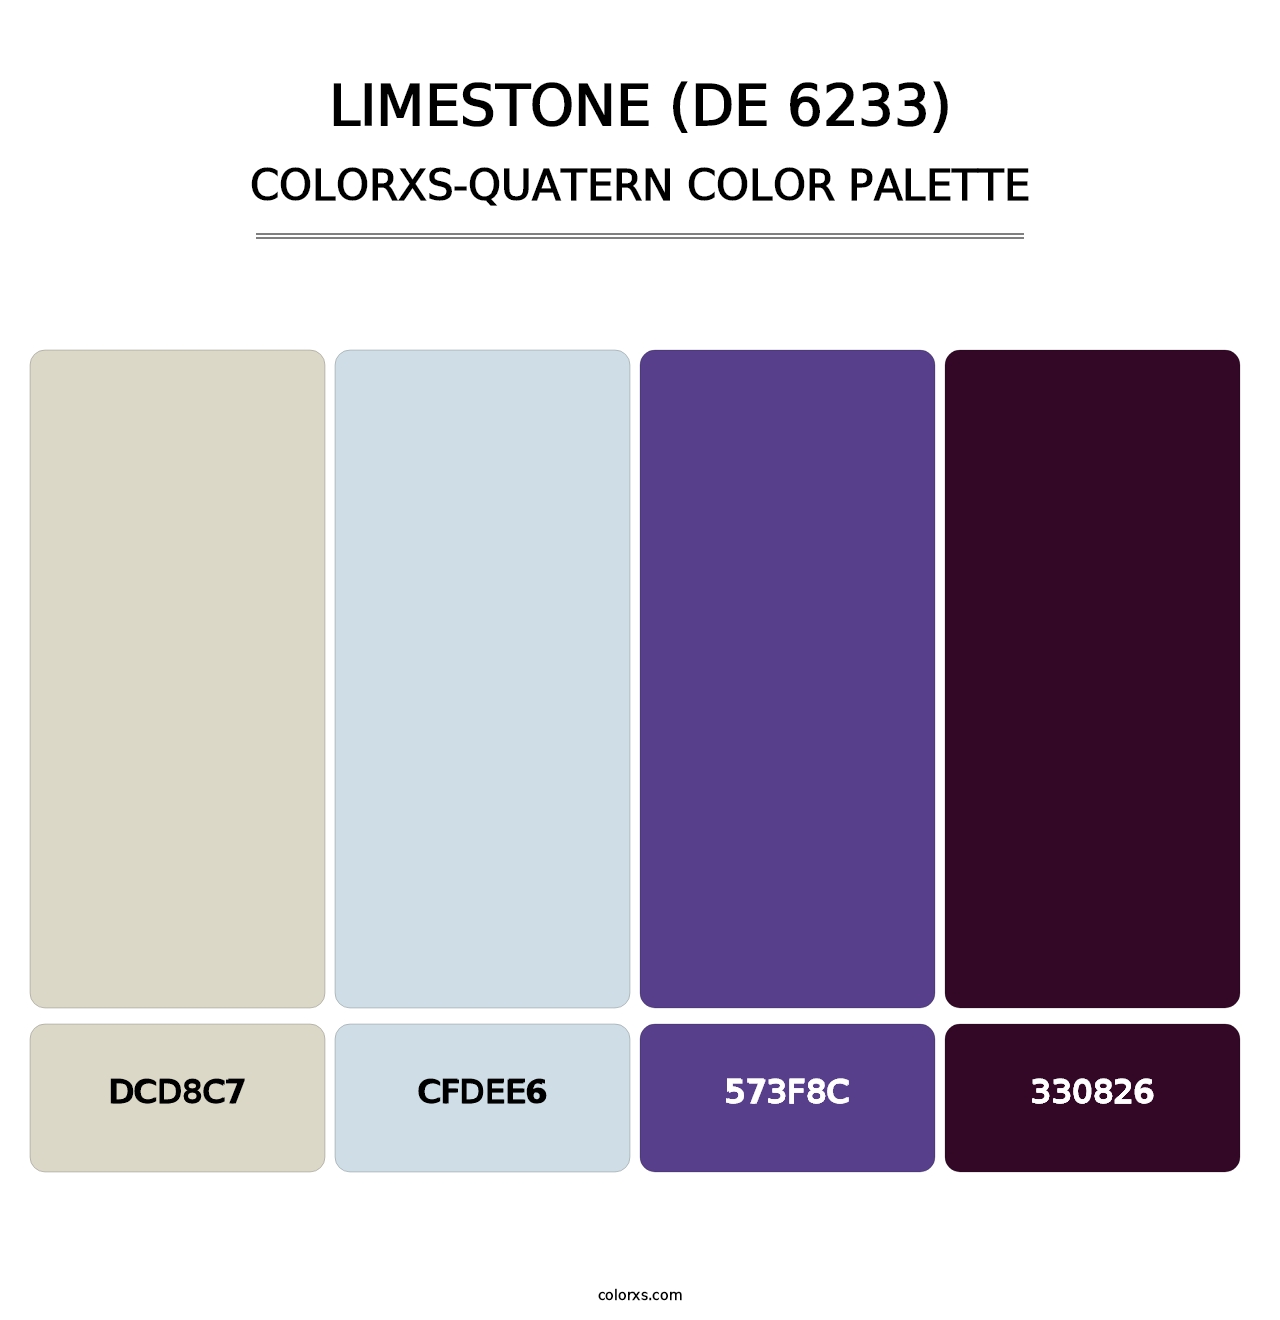 Limestone (DE 6233) - Colorxs Quatern Palette